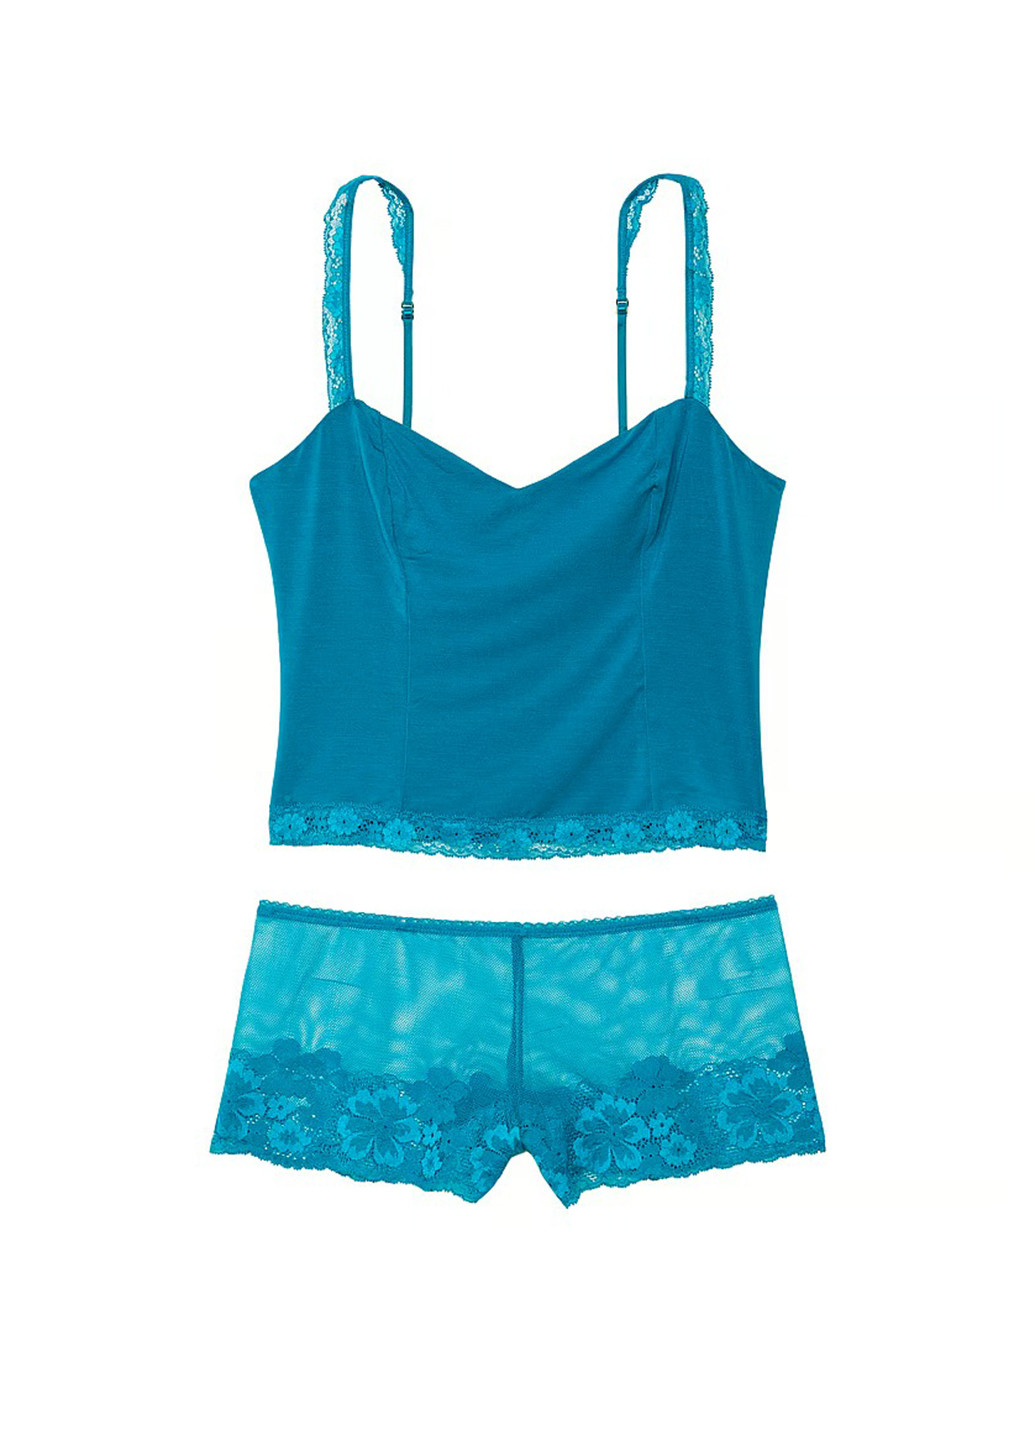 Голубая всесезон пижама (топ, трусики) топ + шорты Victoria's Secret